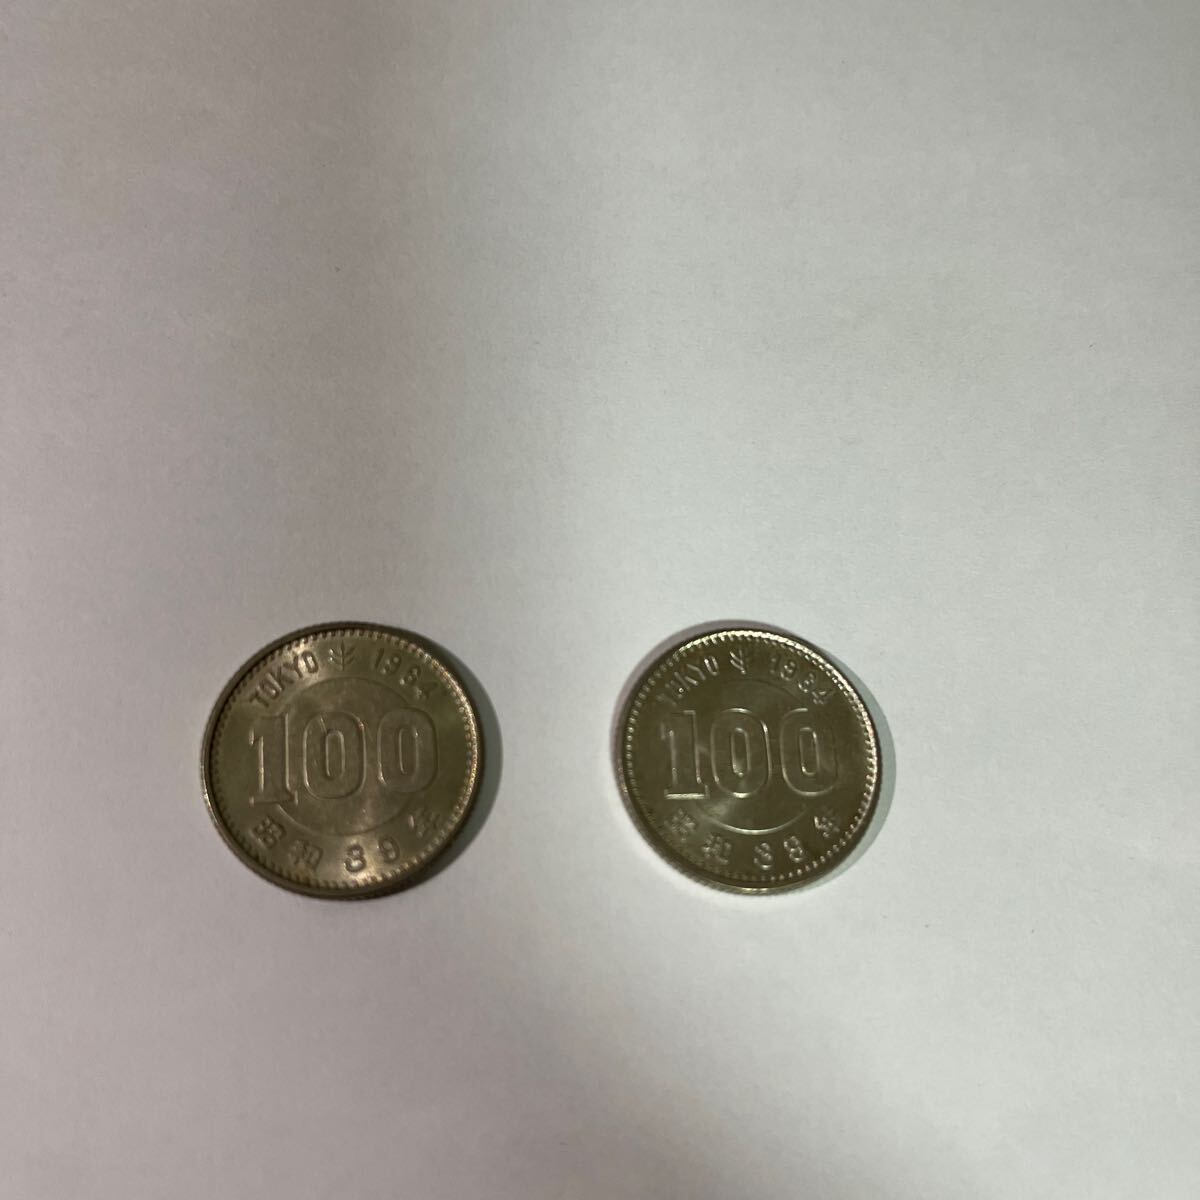 東京オリンピック 記念硬貨 100円銀貨の画像1